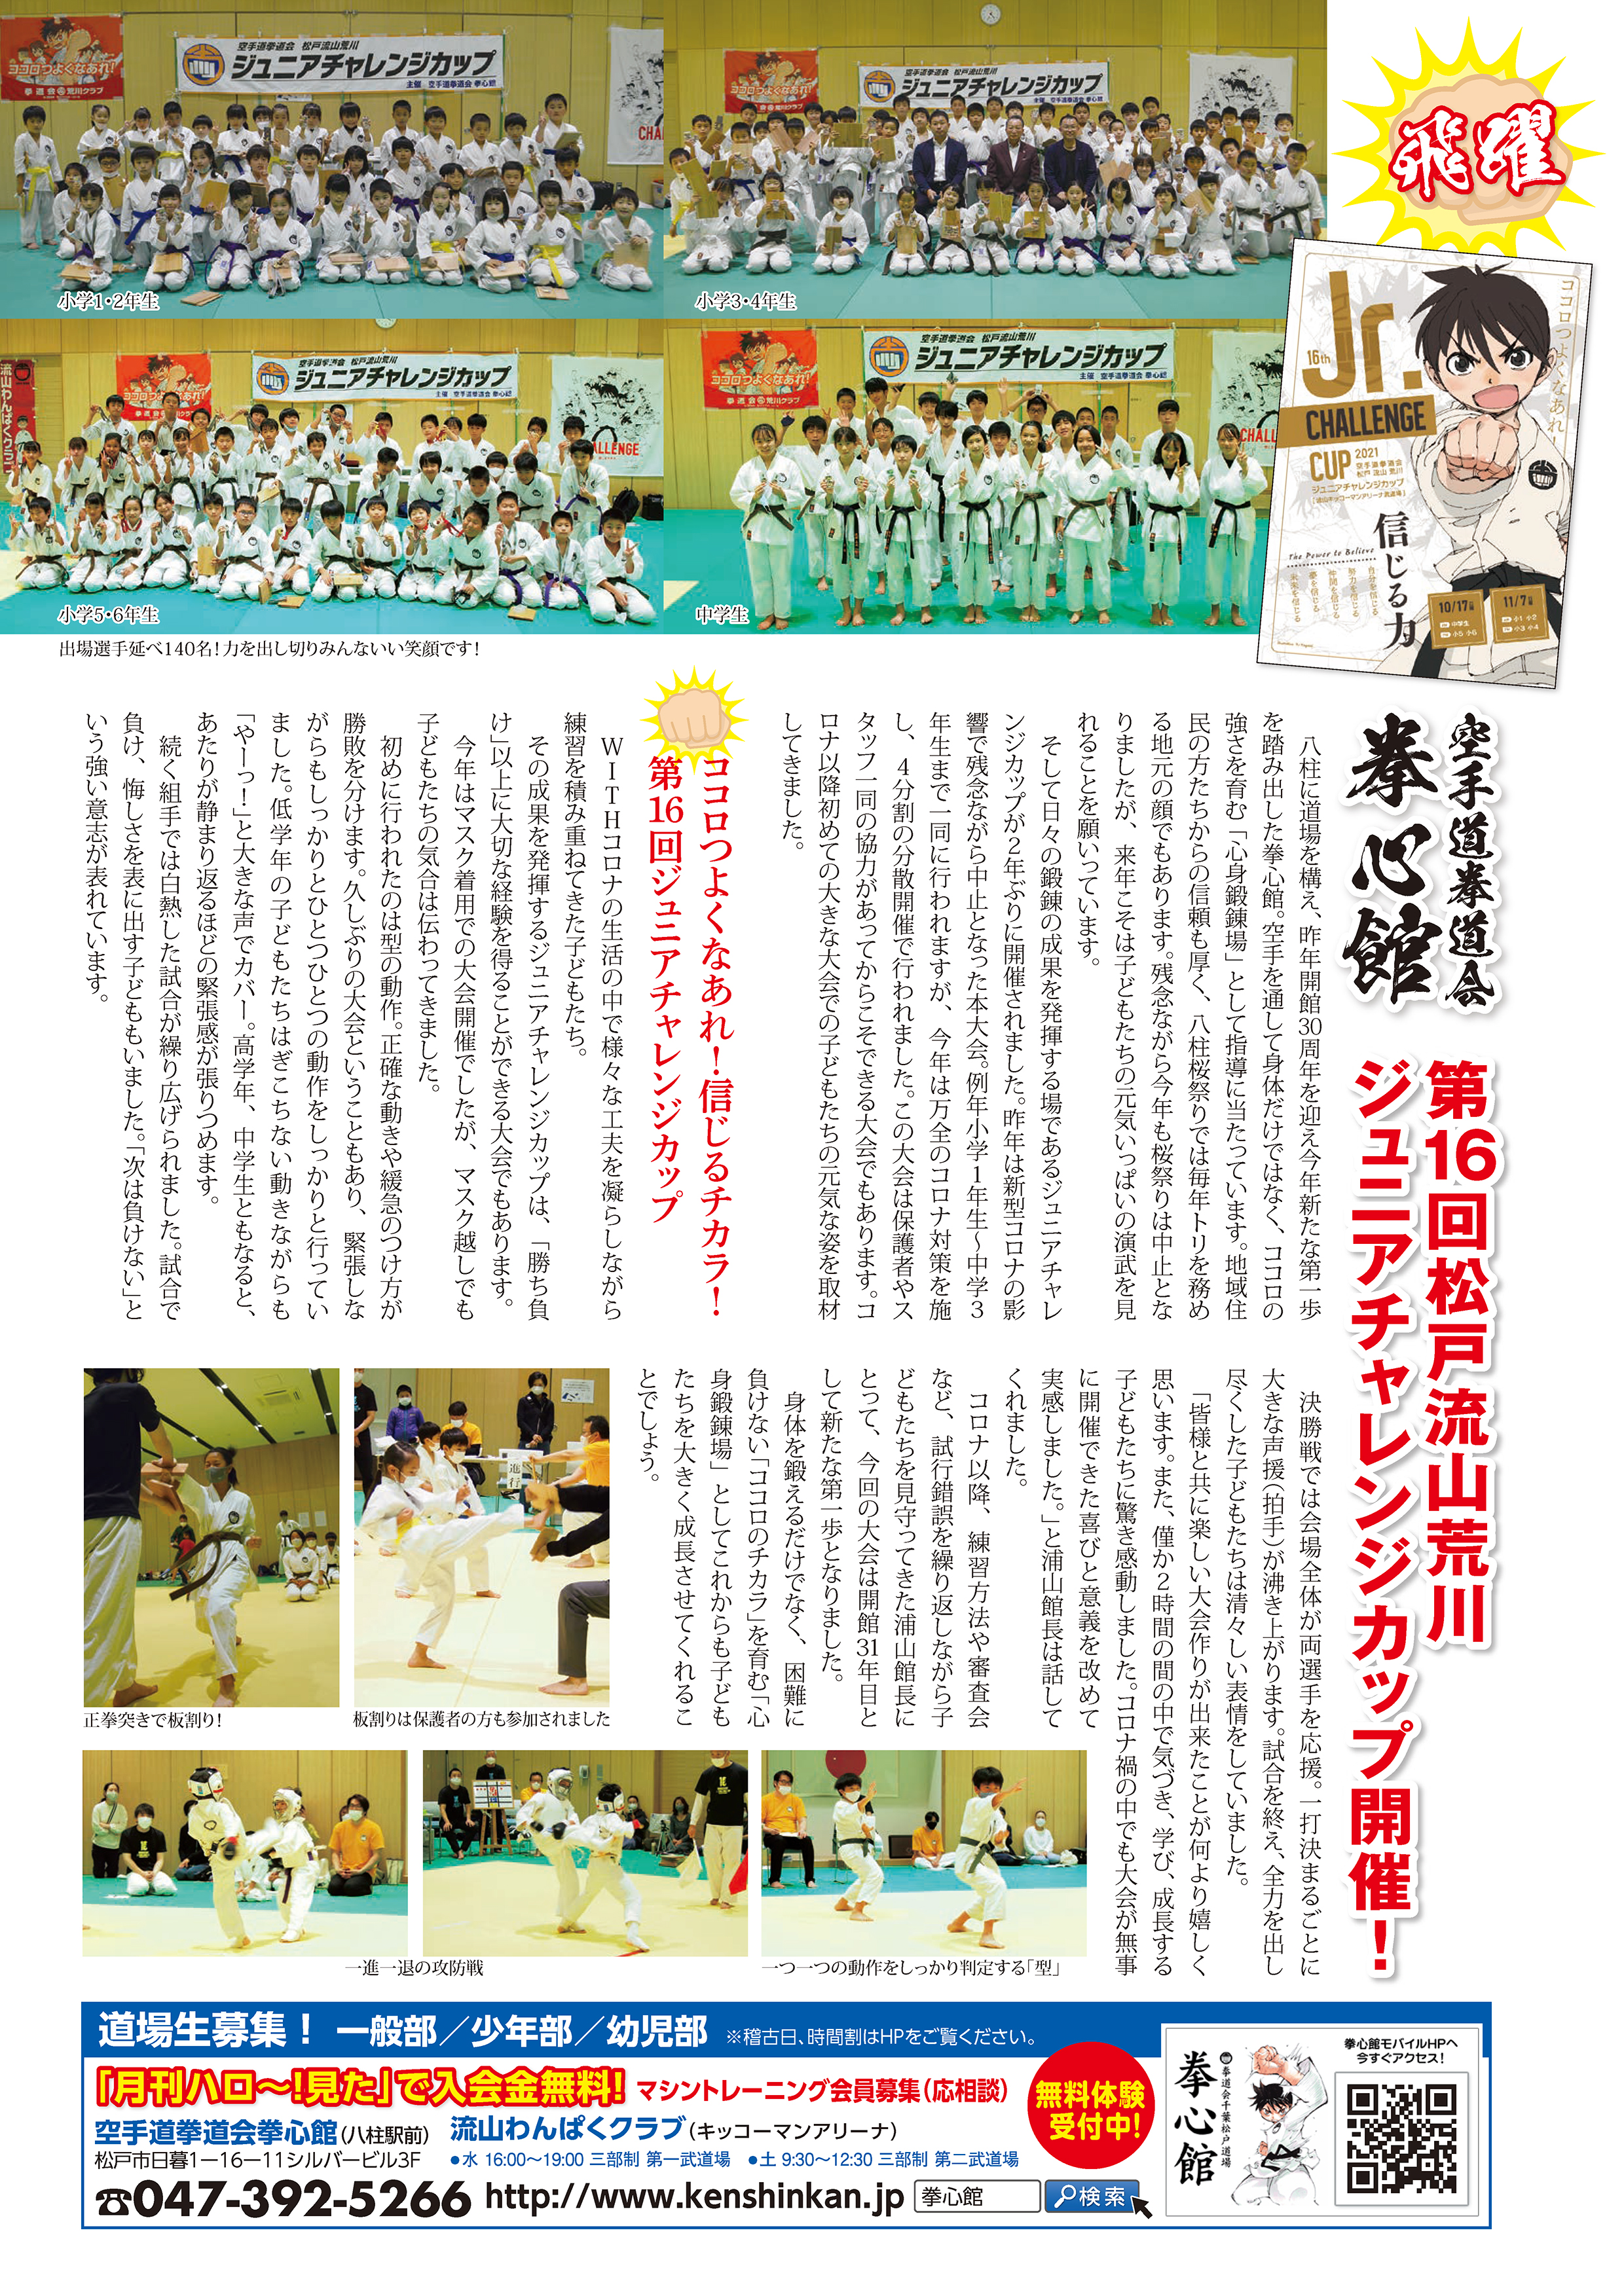 空手道拳道会 拳心館
第16回松戸流山荒川ジュニアチャレンジカップ開催！

